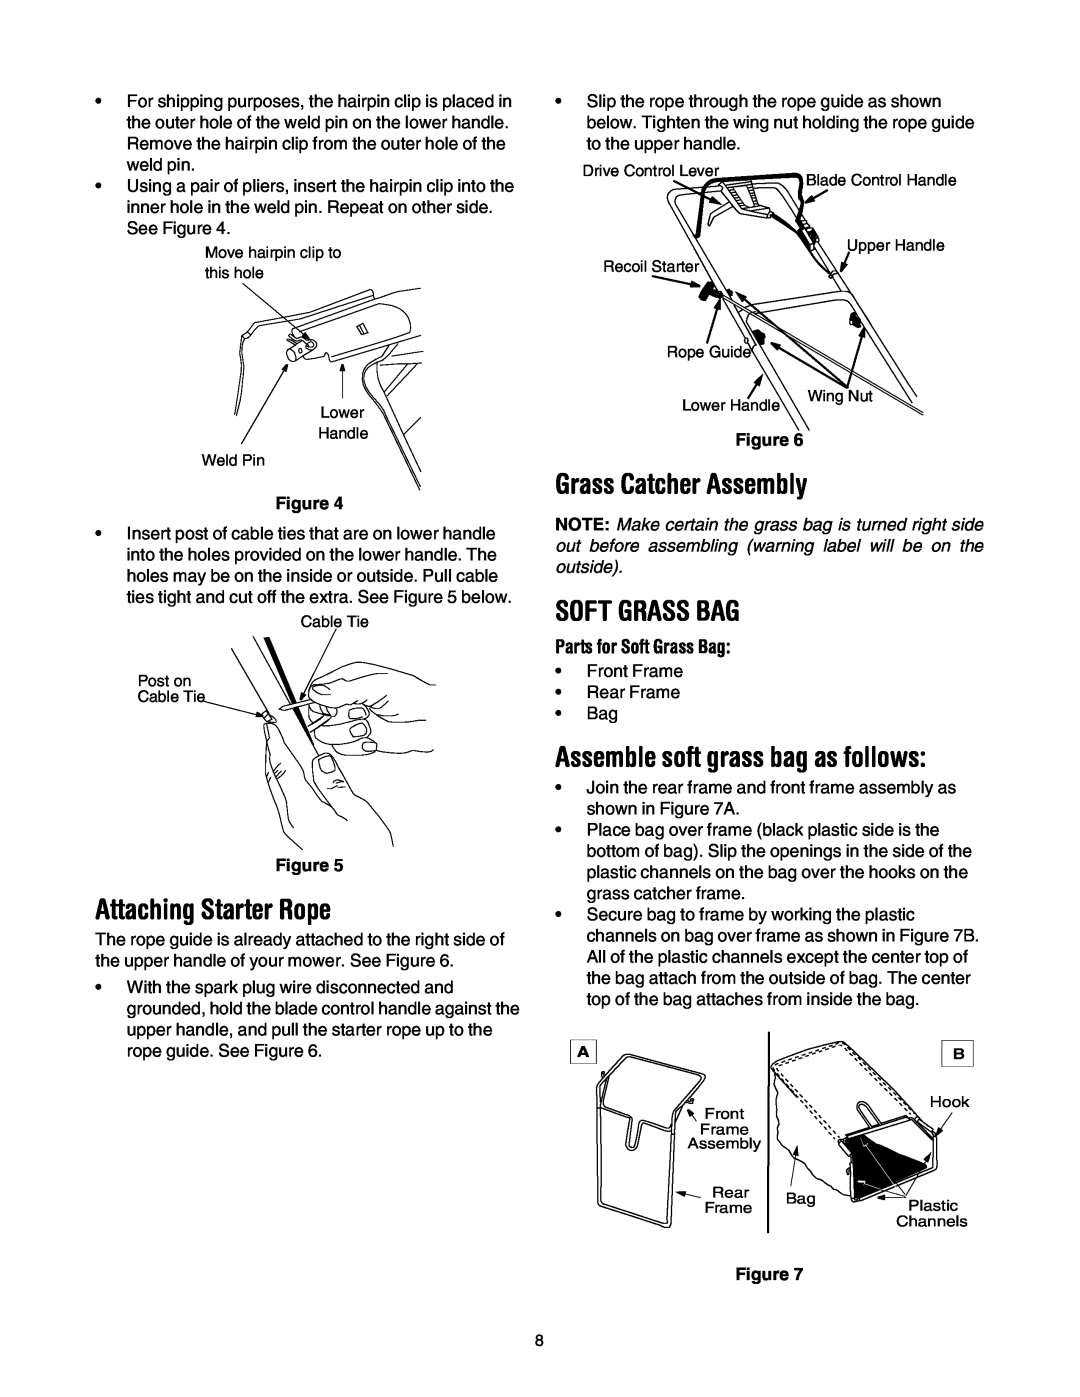 MTD 440 Thru E459 manual Attaching Starter Rope, Grass Catcher Assembly, Soft Grass Bag, Assemble soft grass bag as follows 